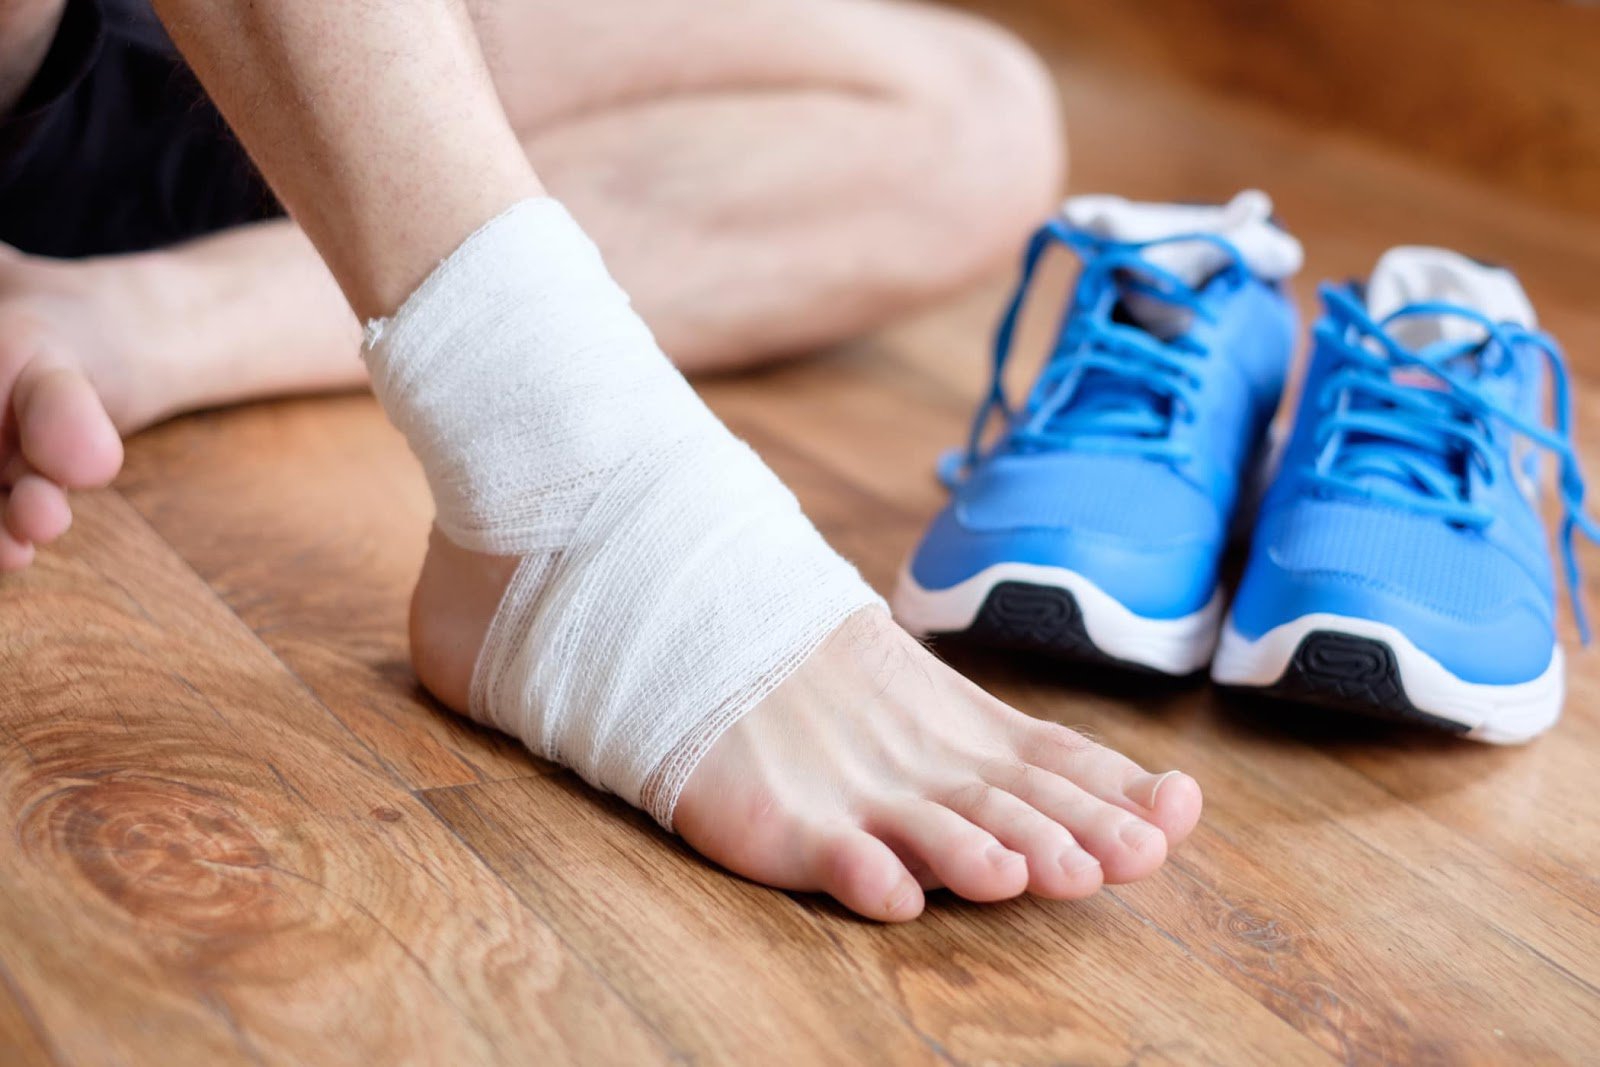 Sử dụng đá hoặc miếng chườm lạnh có tác dụng gì trên cổ chân bị đau?
